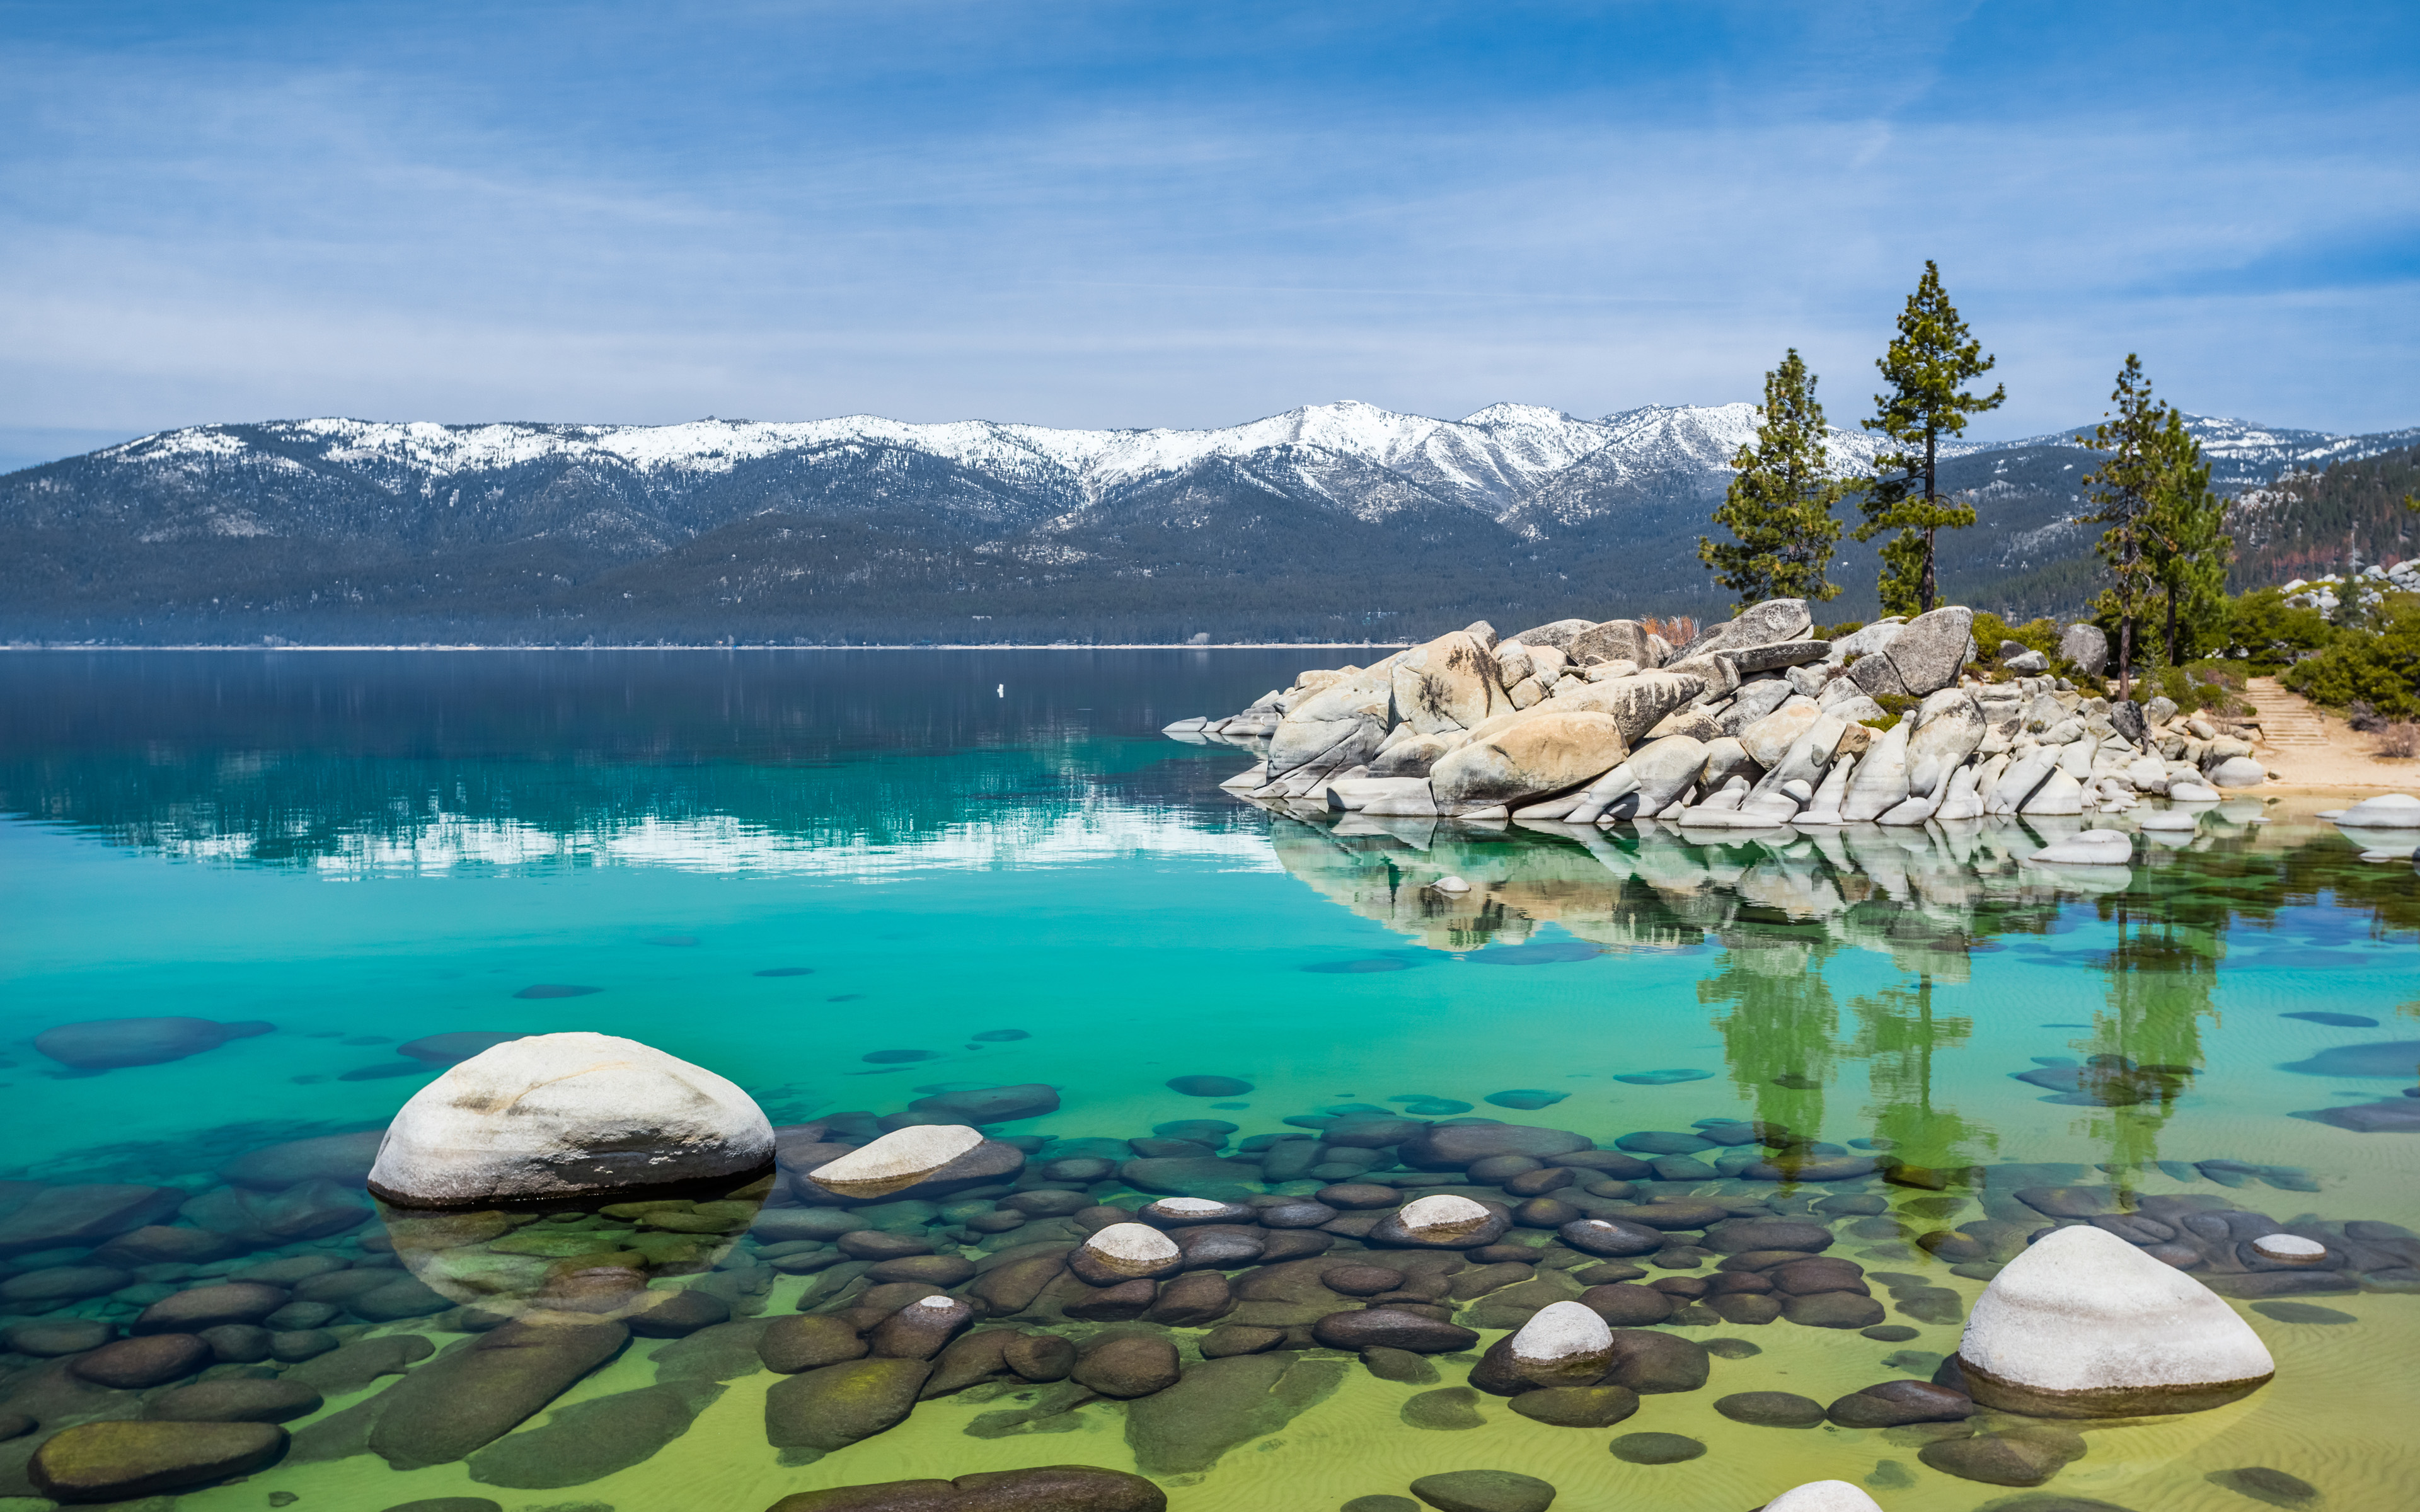 Tại sao làm ngơ với mùa thu hoạch của Lake Tahoe? Hãy cùng trải nghiệm những khoảnh khắc thời tiết se lạnh ở đó, cùng với những cảnh quan rực rỡ và đồng cỏ lúa màu vàng óng ánh. Hình ảnh này sẽ mang lại cho bạn cảm giác gần gũi với thiên nhiên.